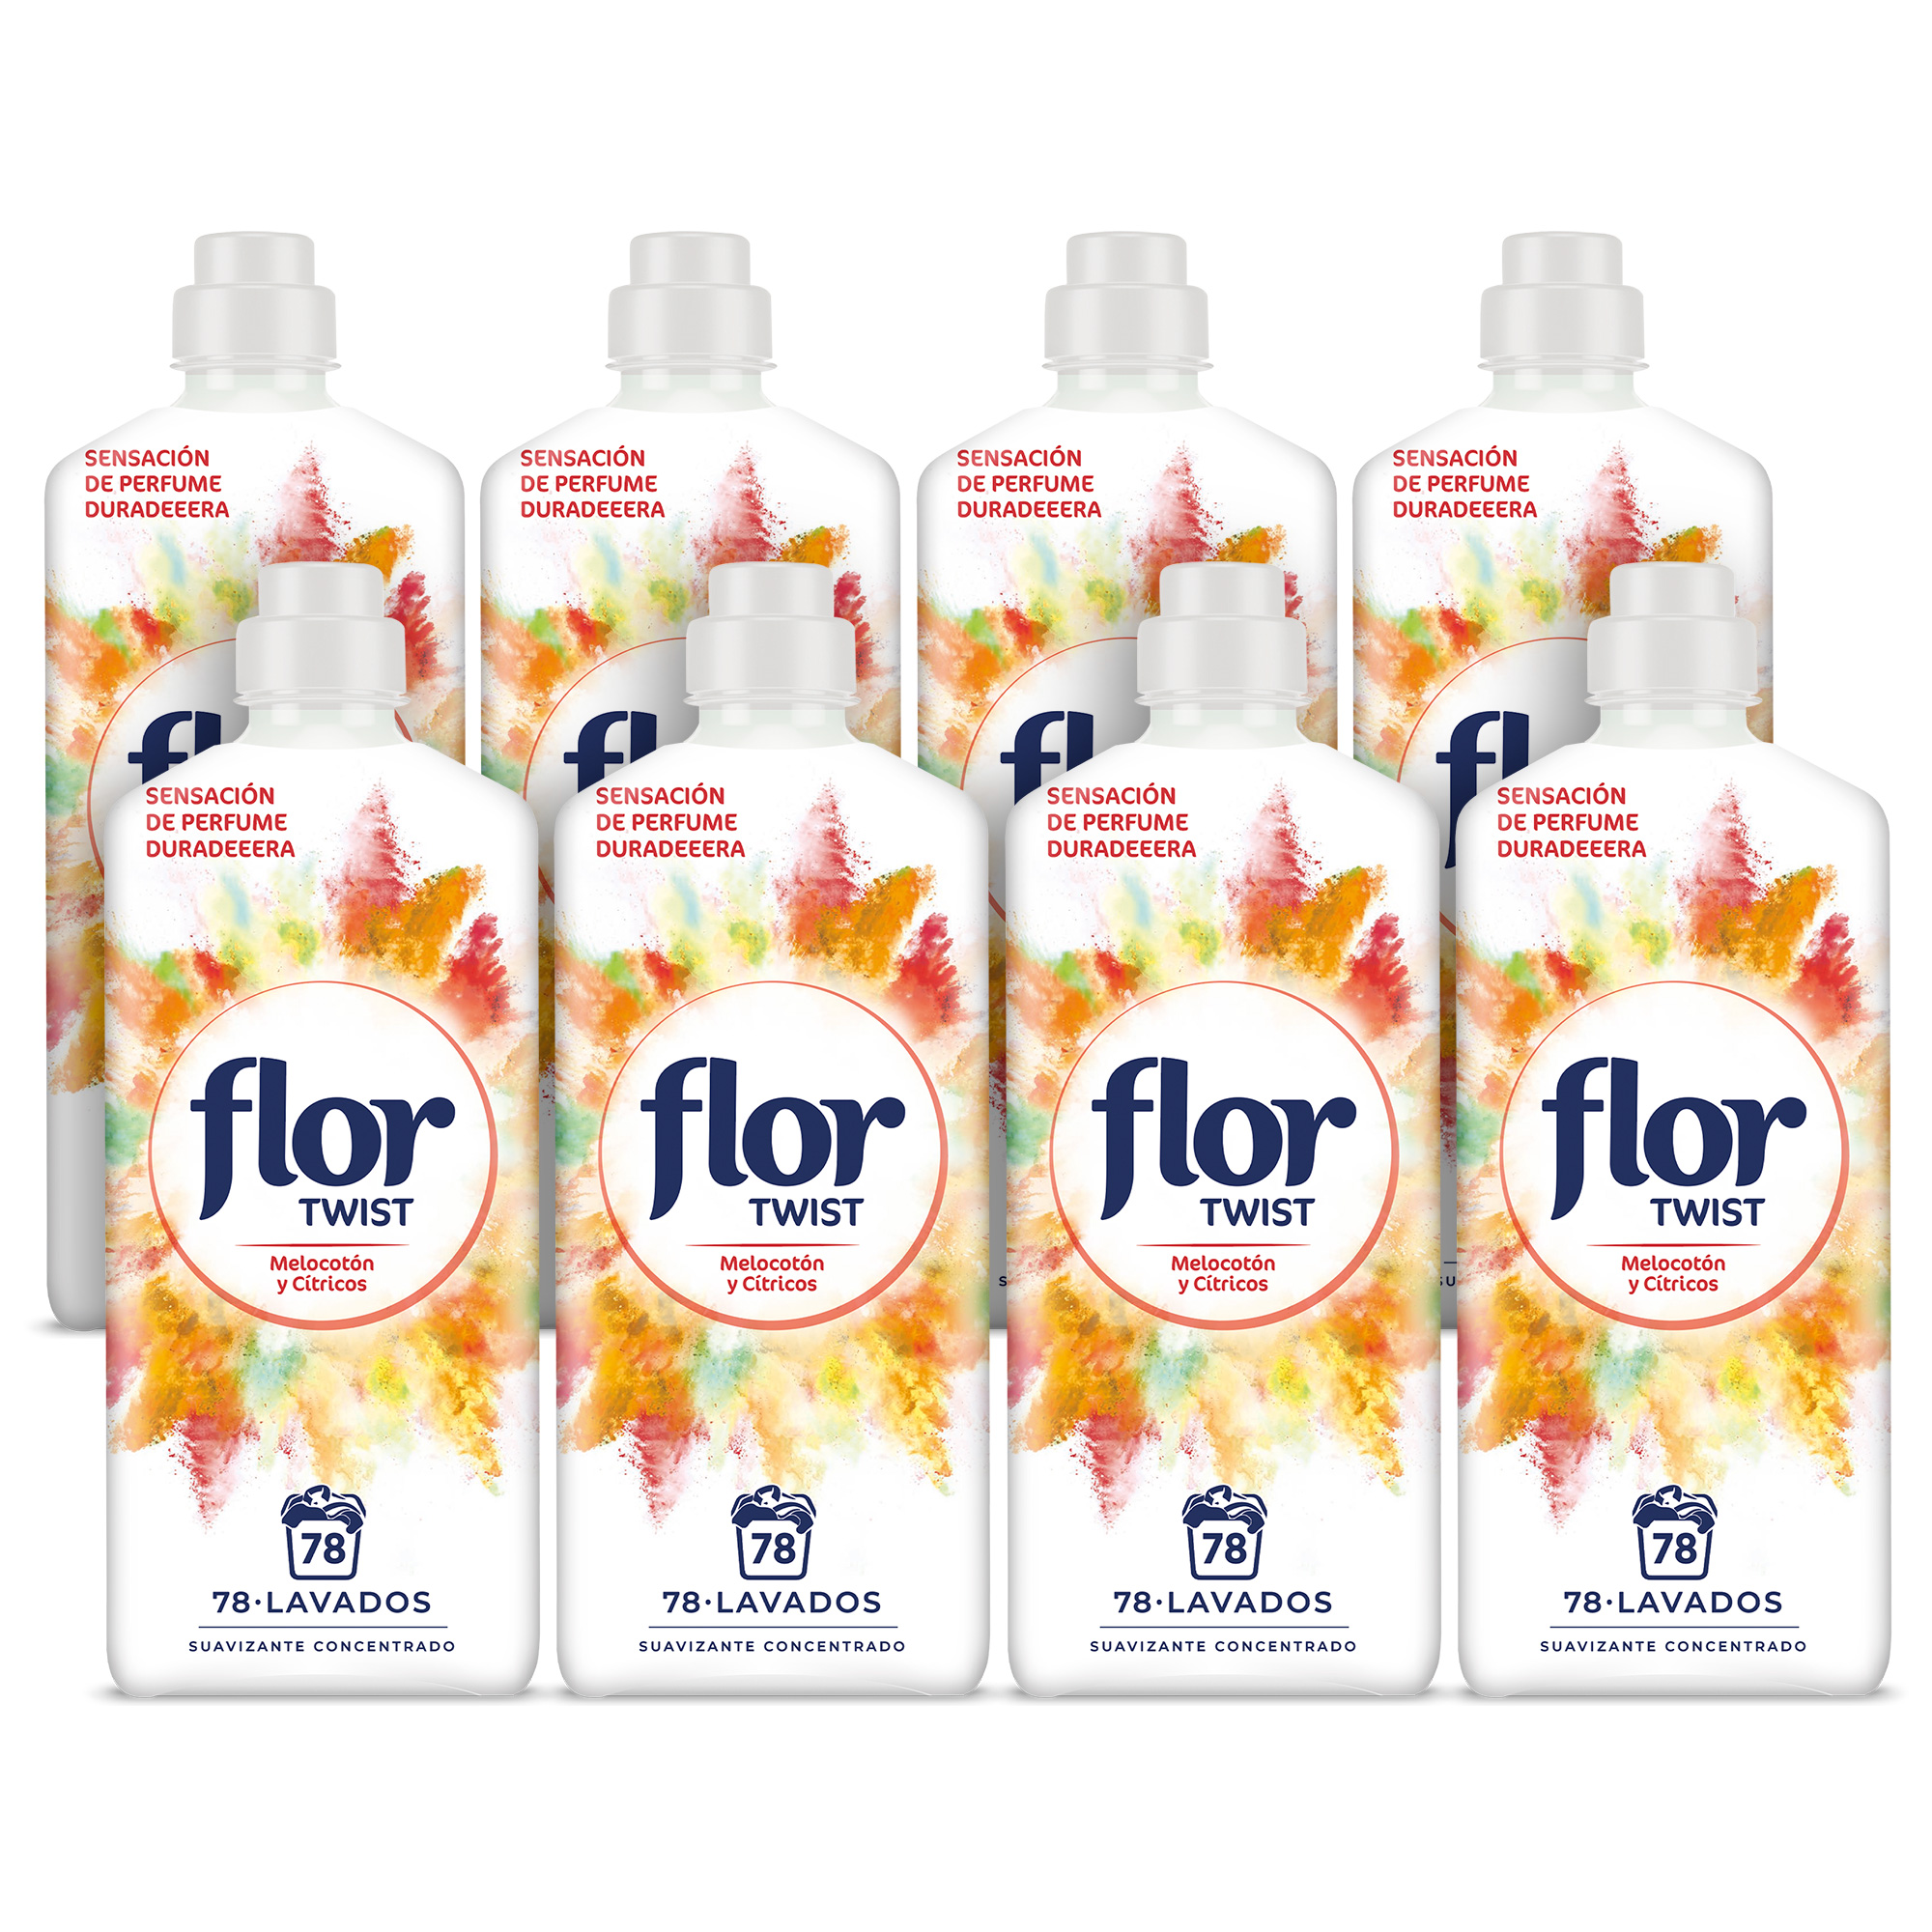 Flor - Flor Twist Melocotón Suavizante Concentrado para la ropa 624 lavados (8 botellas de 78 lavados)